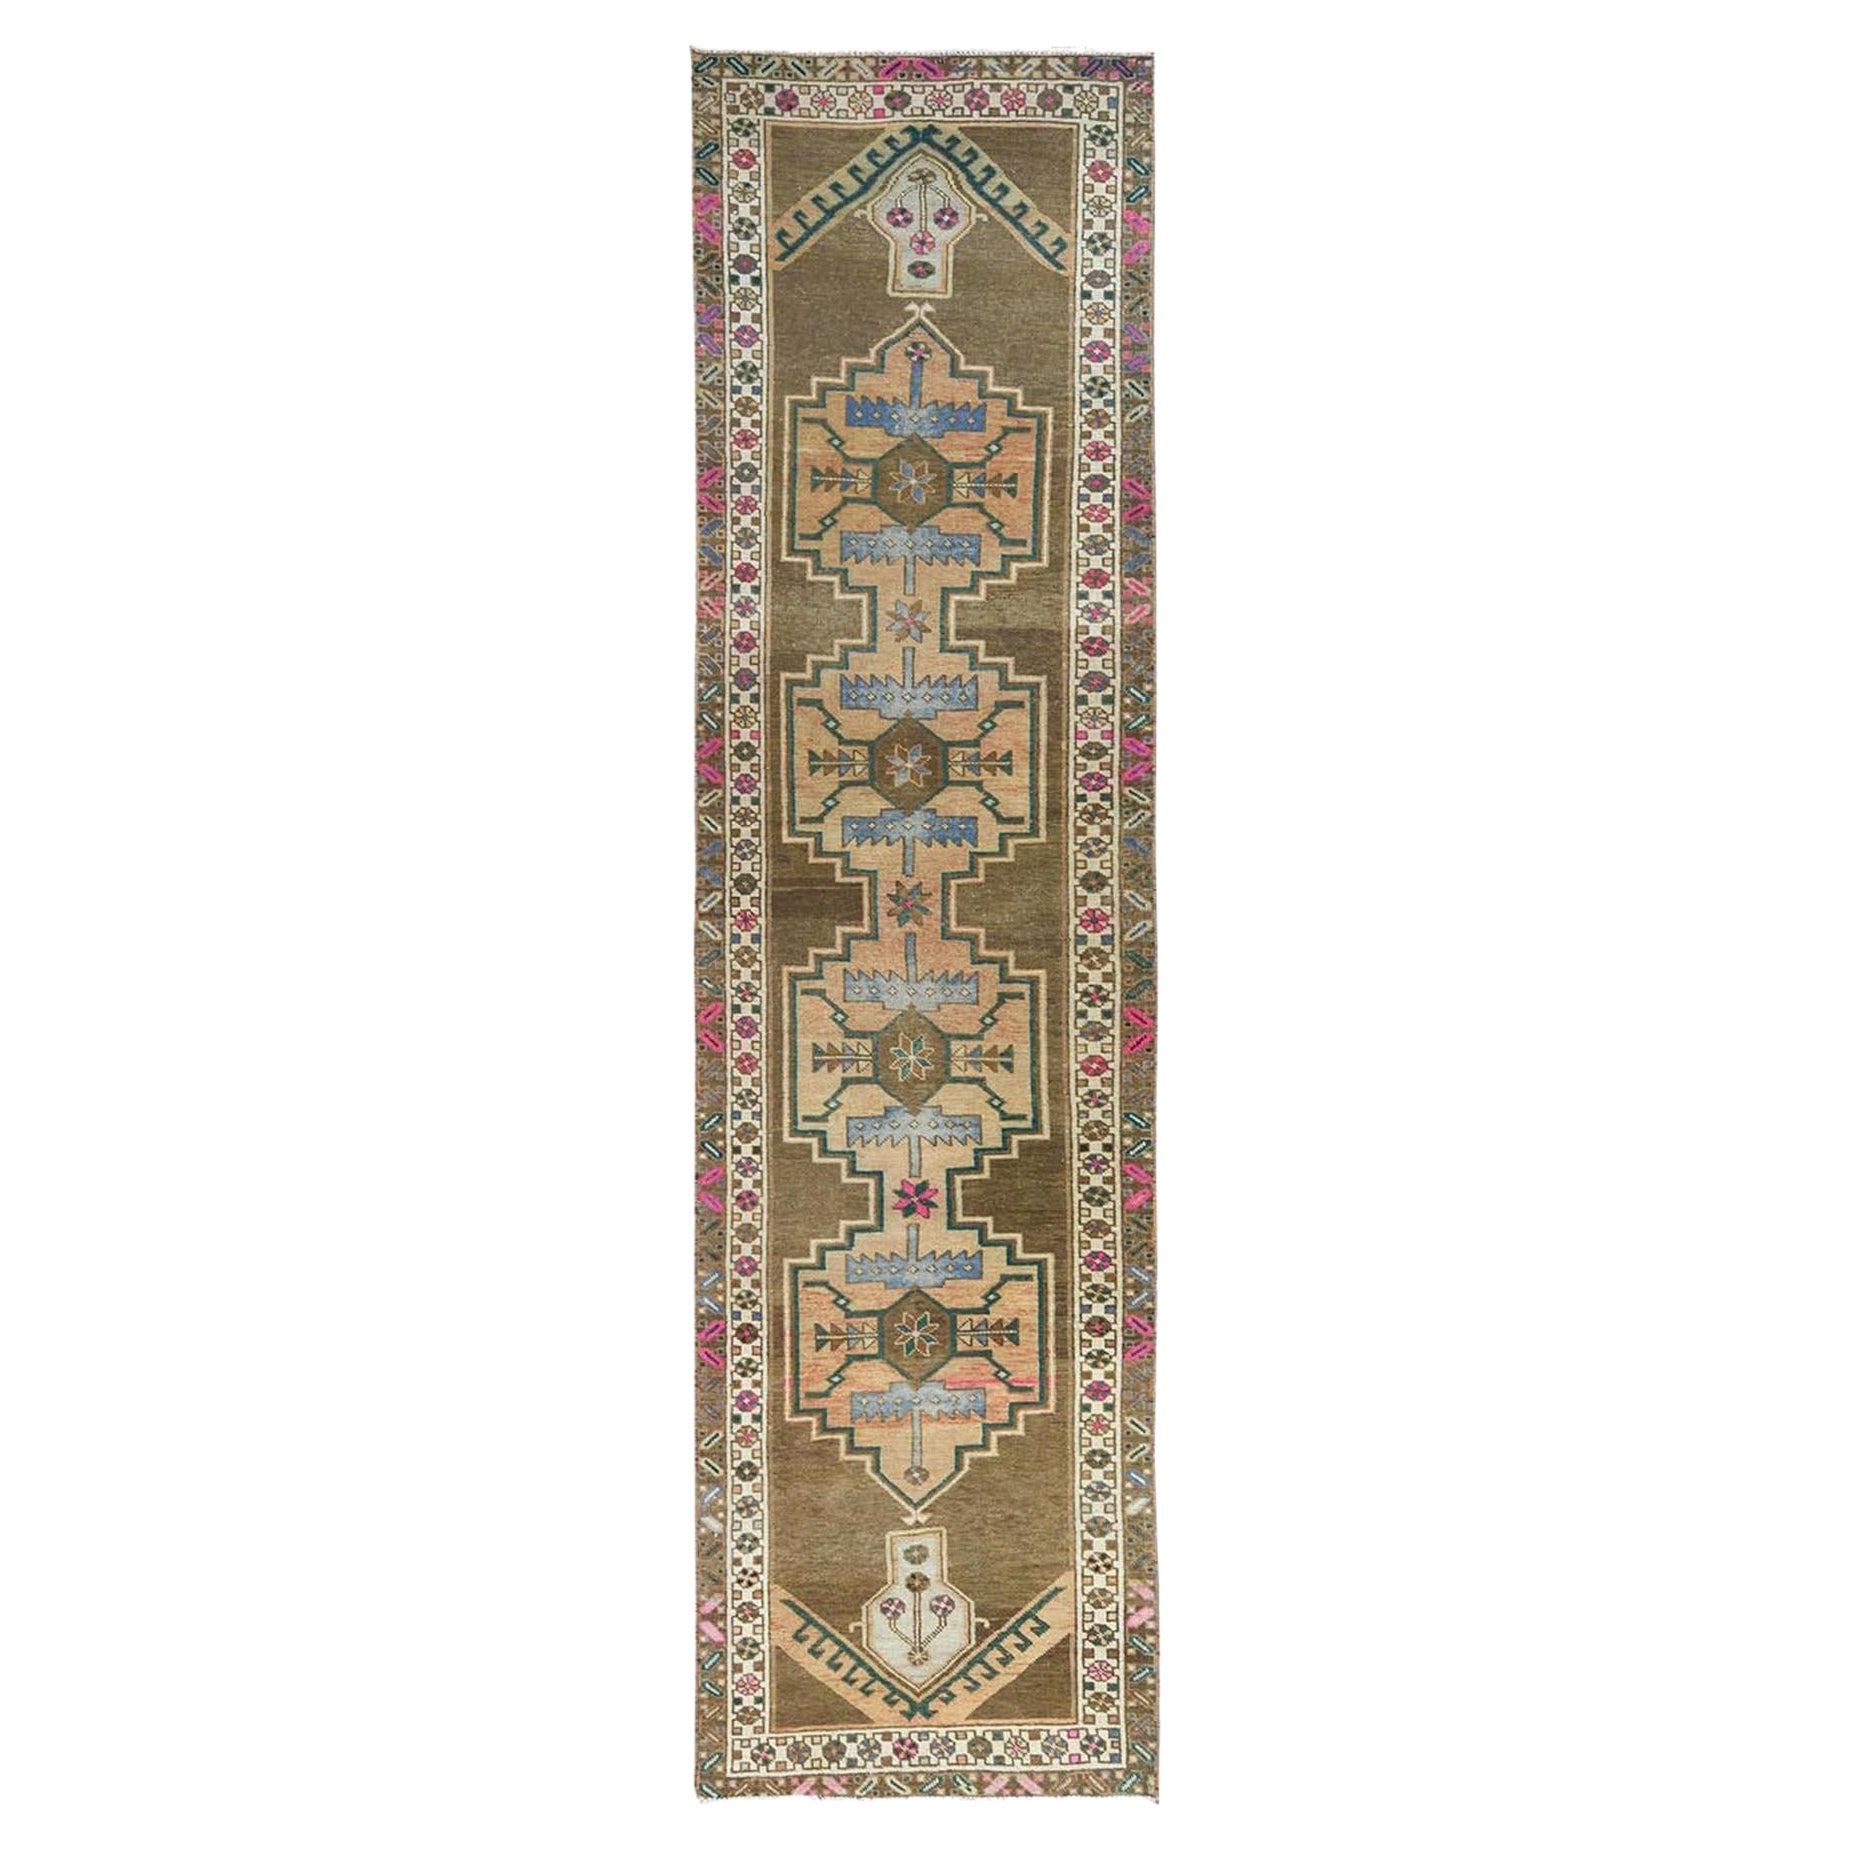 Hazelnut Brauner Vintage Northwest Persian Distressed Handgeknüpfter Teppich aus reiner Wolle